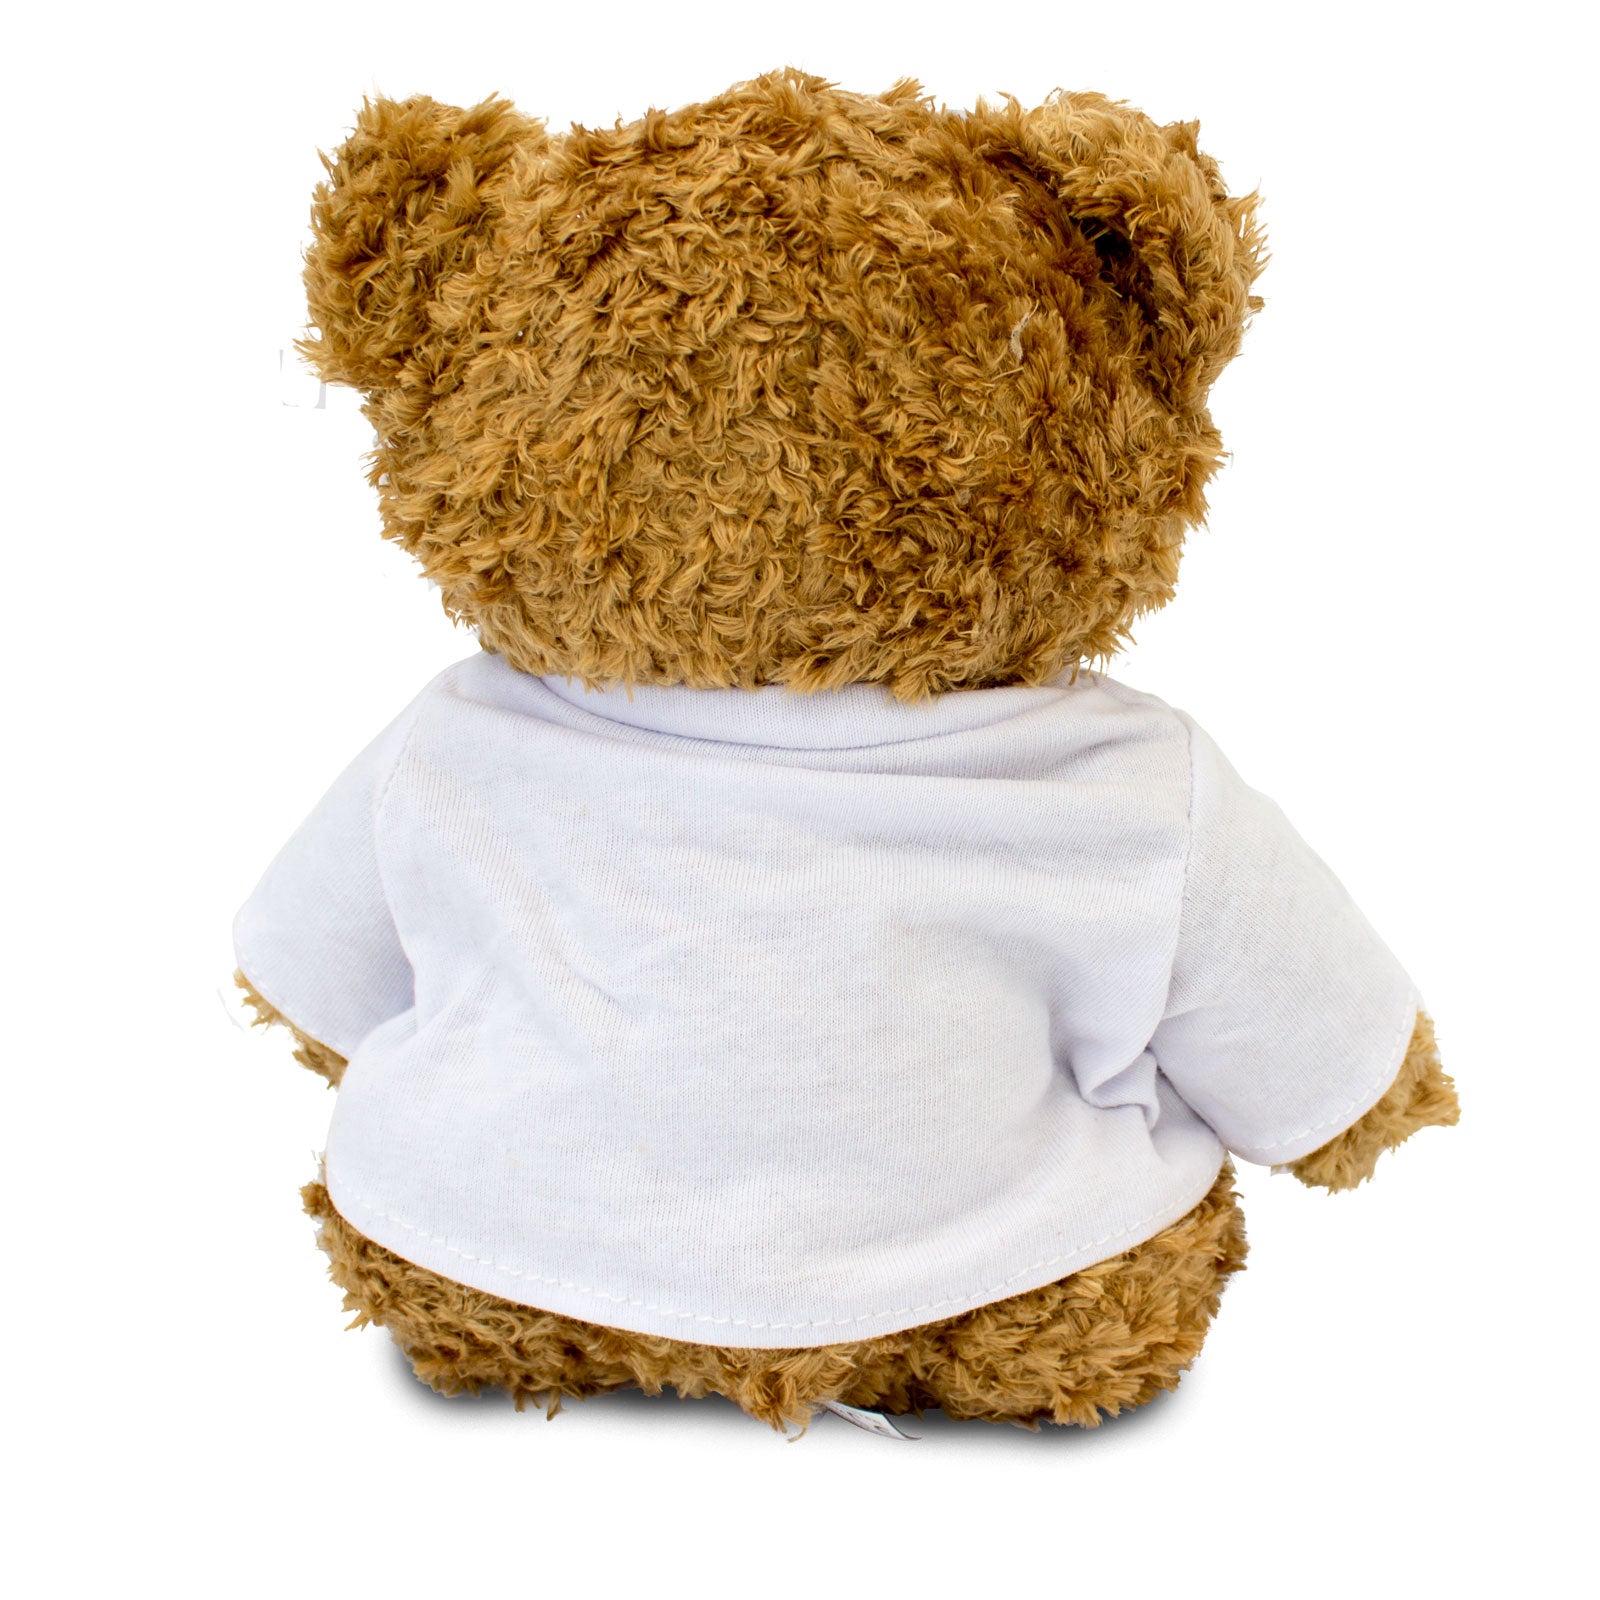 I Love Tony - Teddy Bear